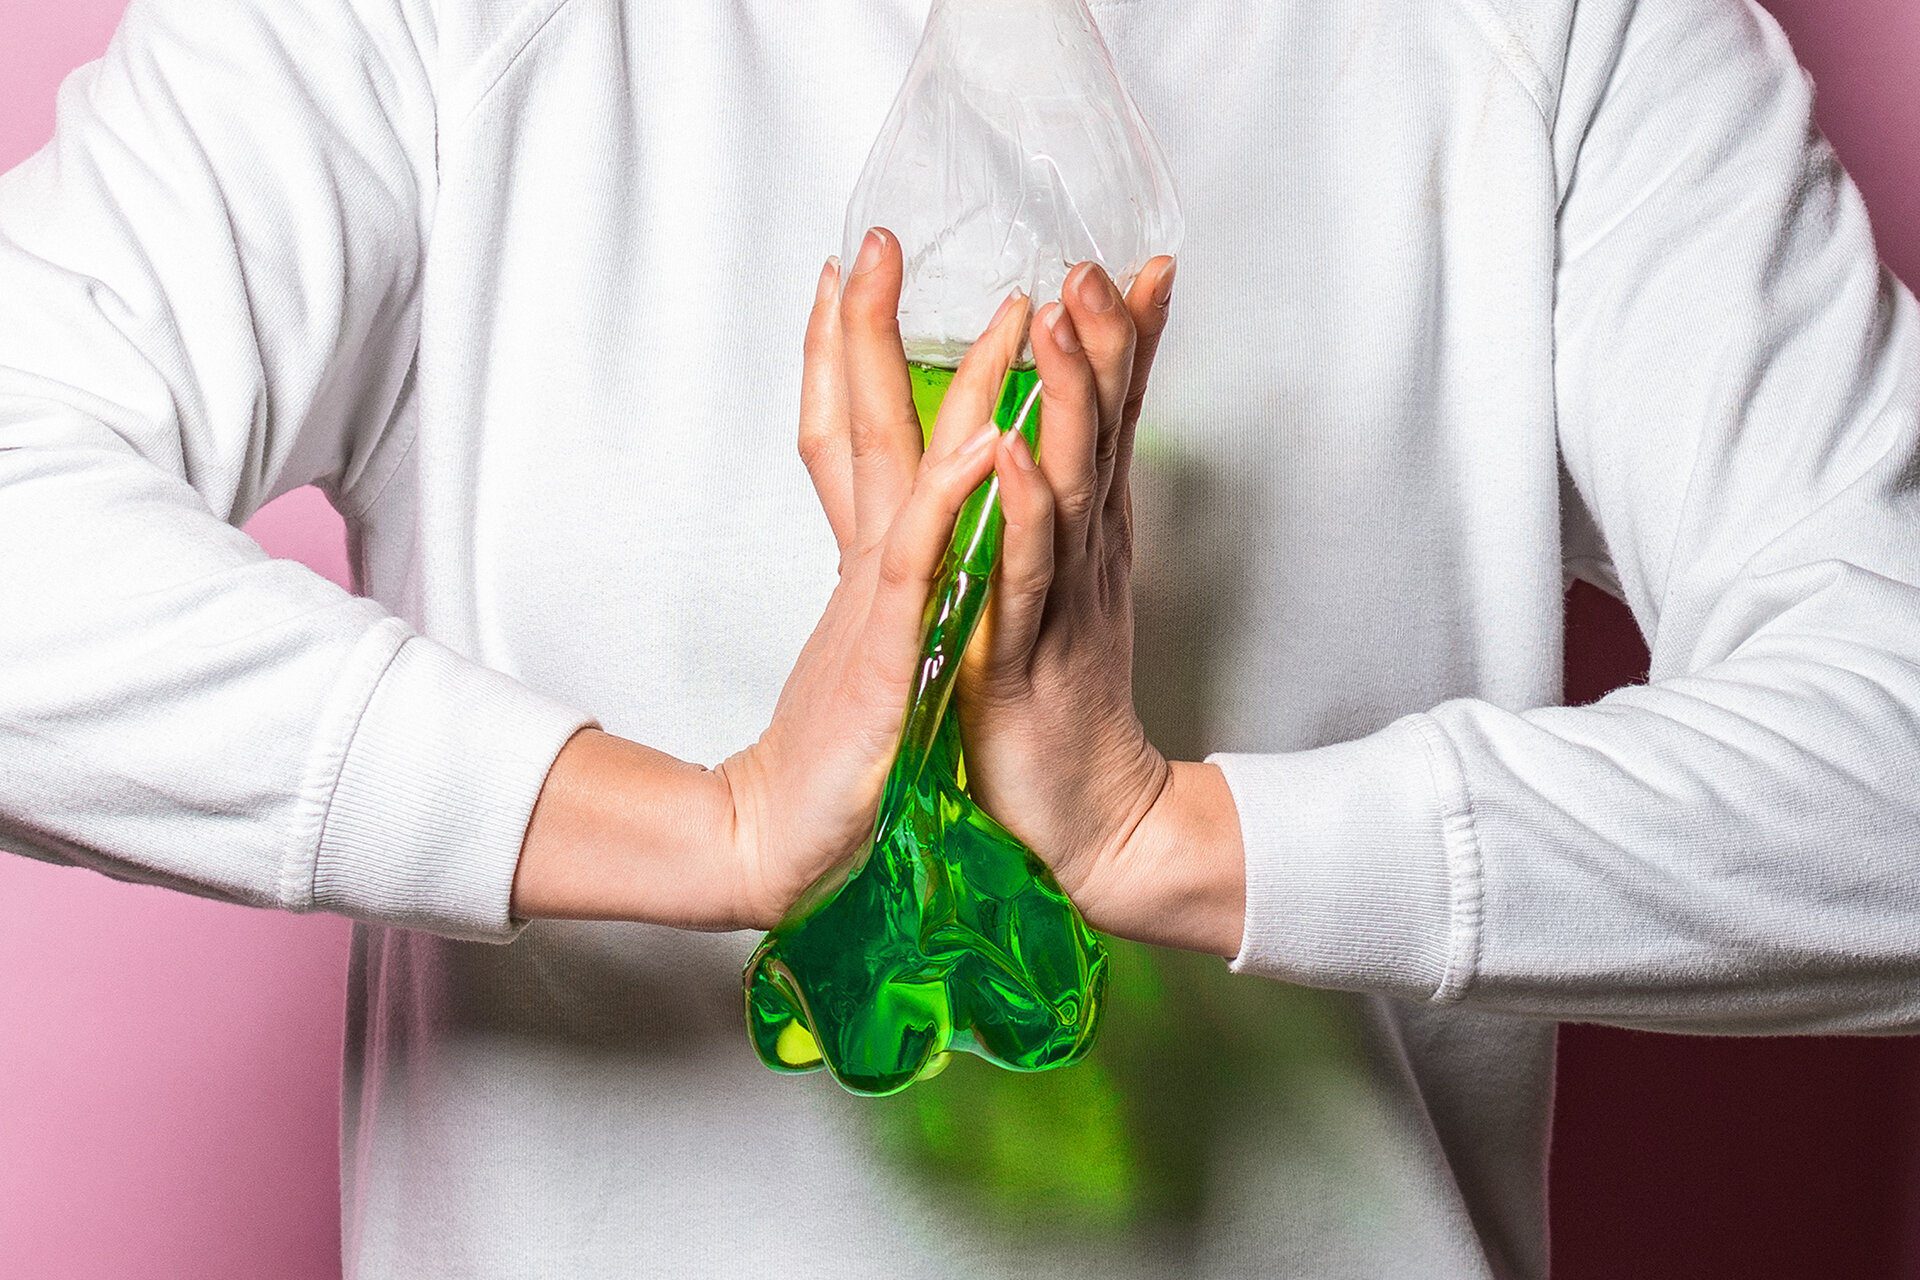 Person zerquetscht Plastikflasche mit einer grünen Flüssigkeit zwischen den Händen.